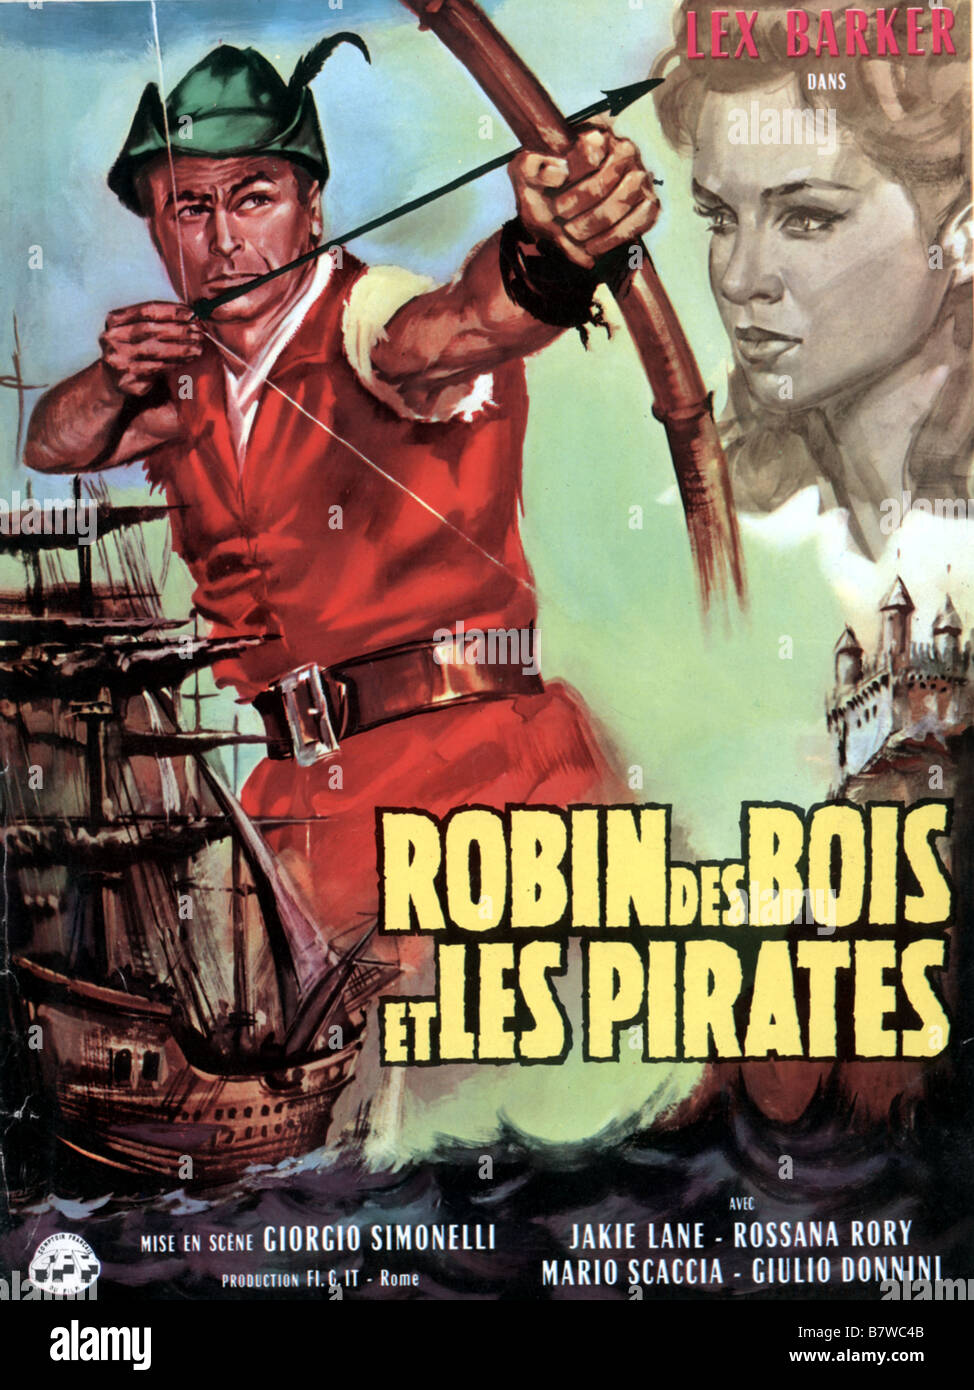 Robin des bois et les pirati Robin Hood e i pirati Anno: 1960 - Italia  affiche, poster Direttore: Giorgio Simonelli Foto stock - Alamy